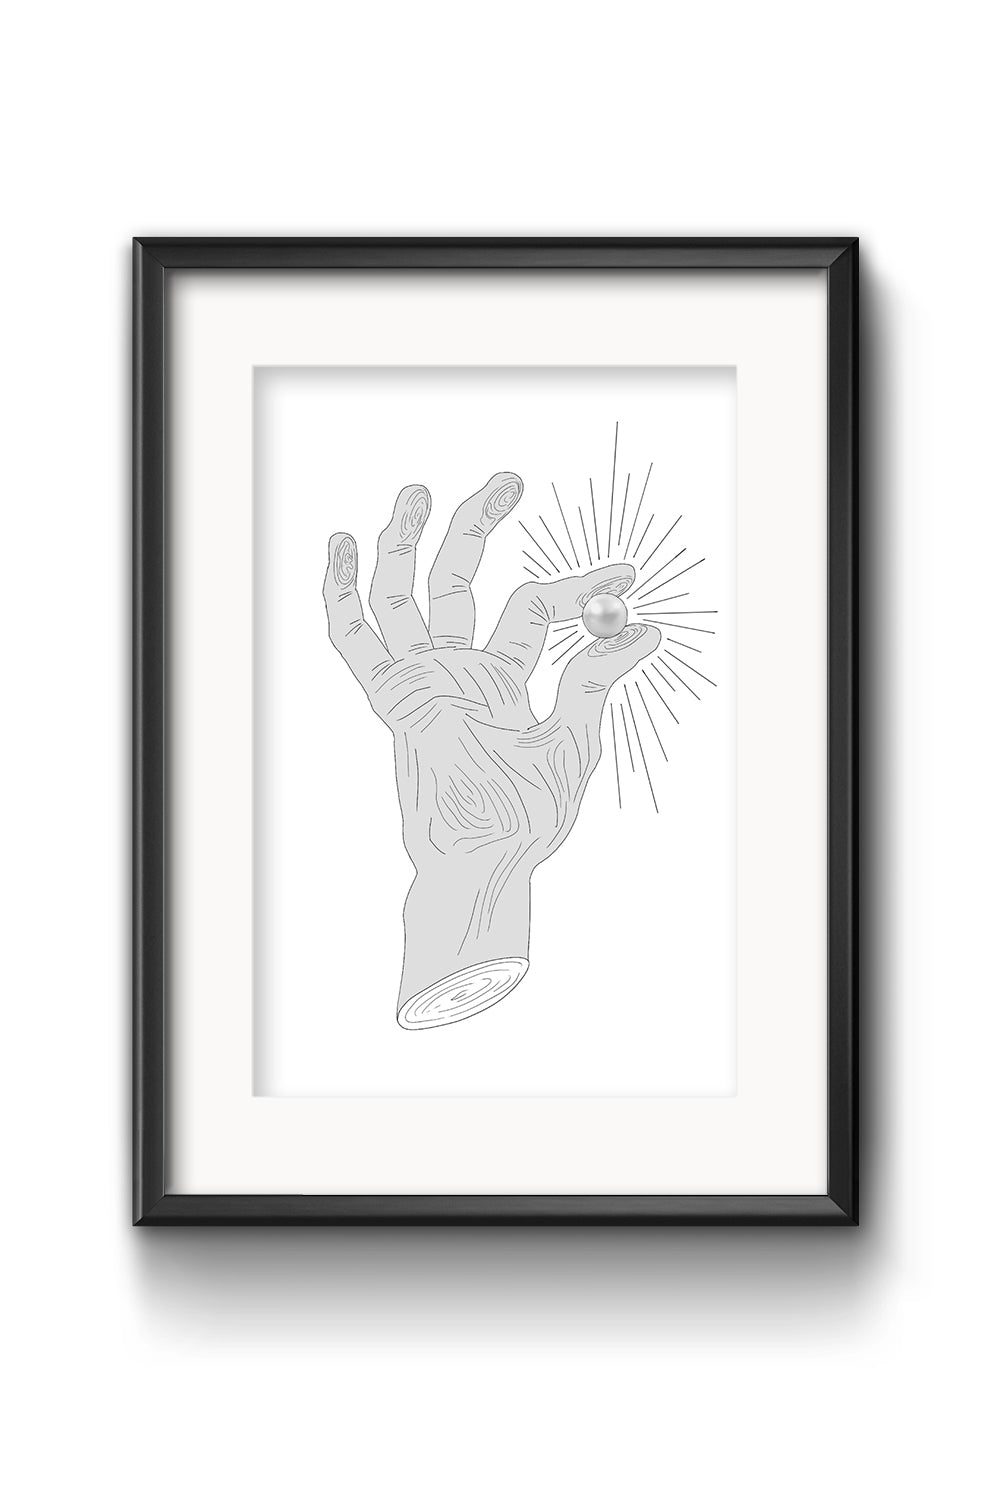 plakat dłoń z perłą home decor urządzanie domu sztuka